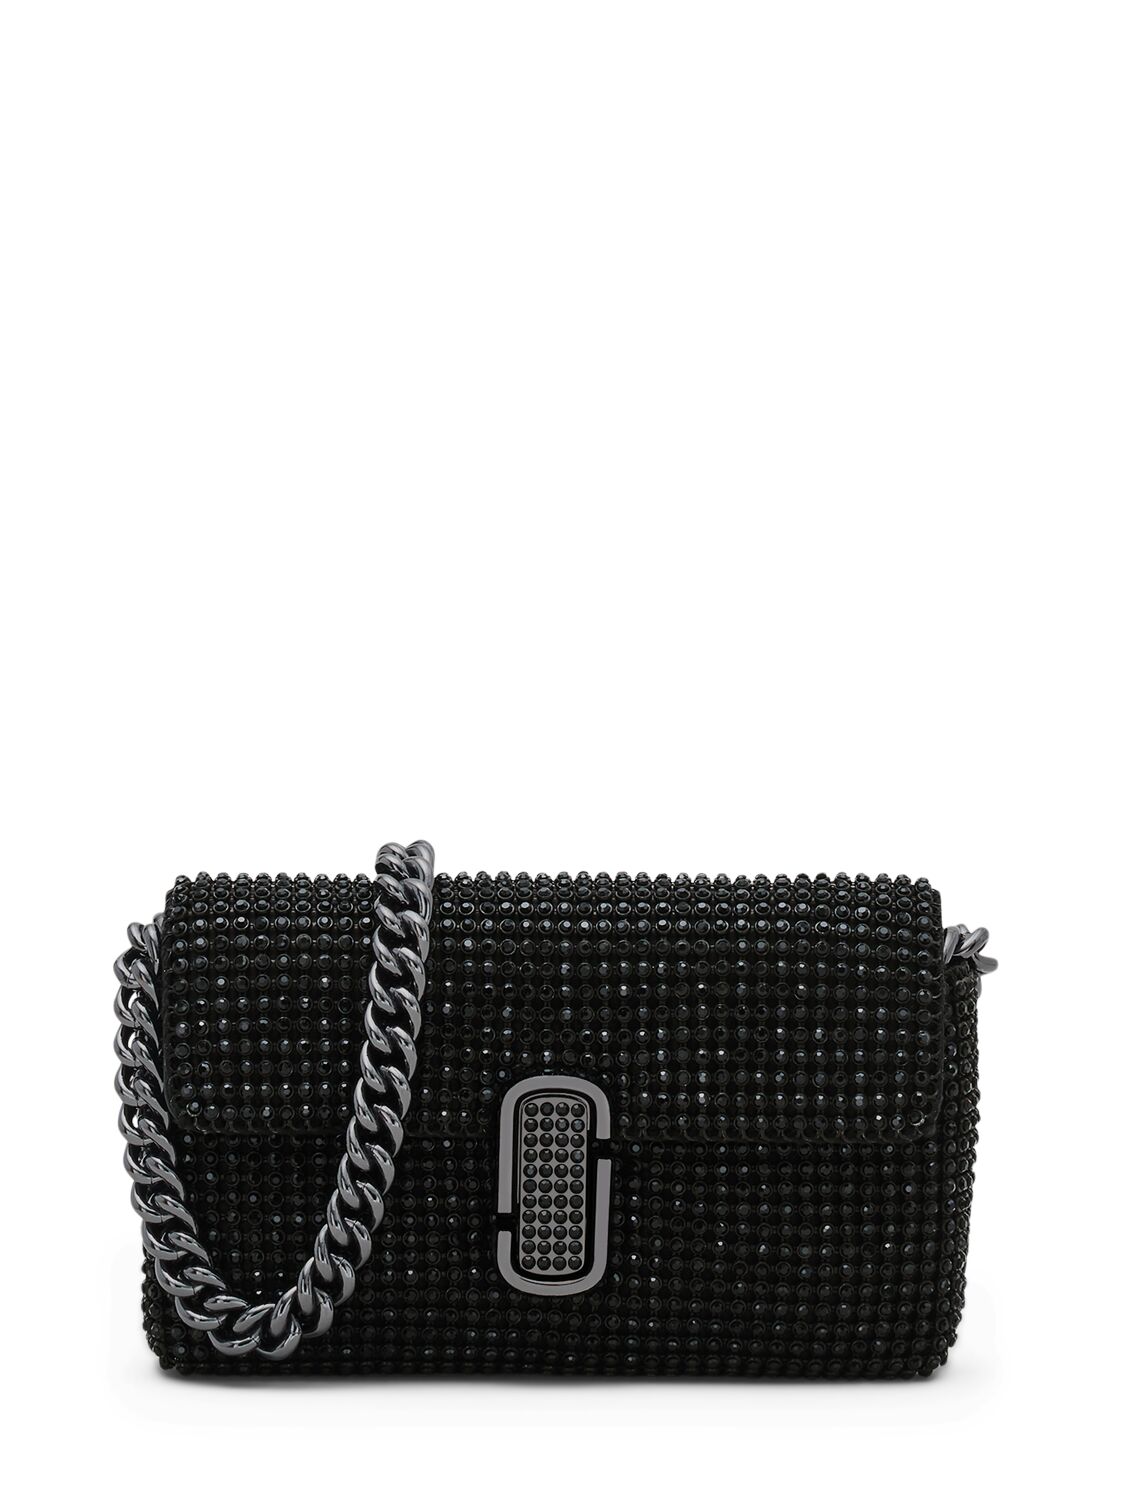 Marc Jacobs The Mini Rhinestone Shoulder Bag In Black